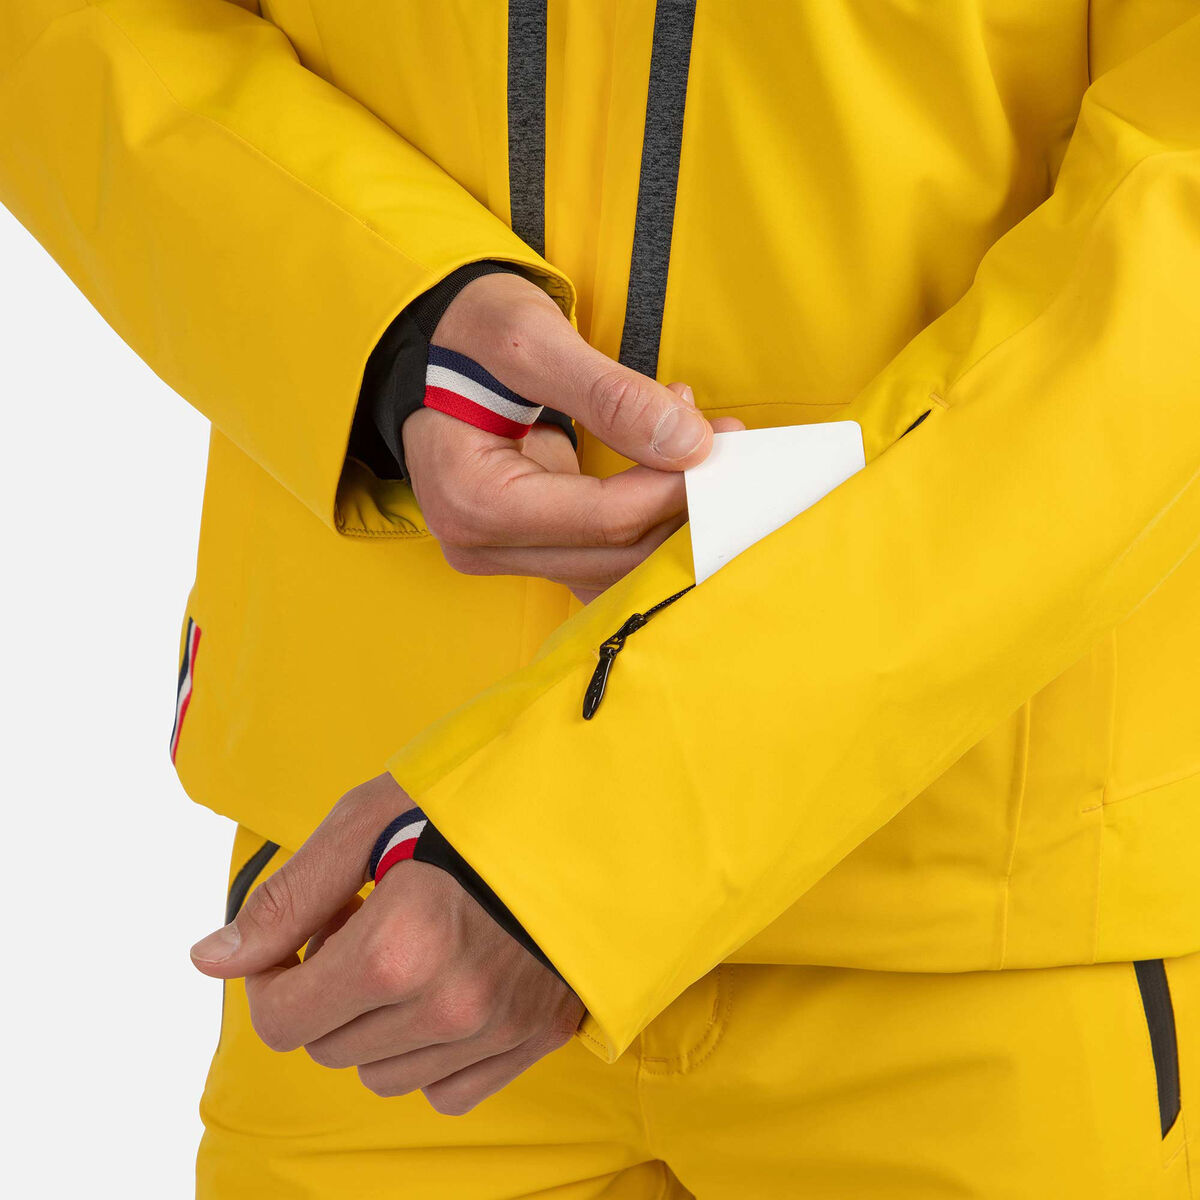 Men's Summit Stripe Ski Jacket | Outlet selection | Rossignol